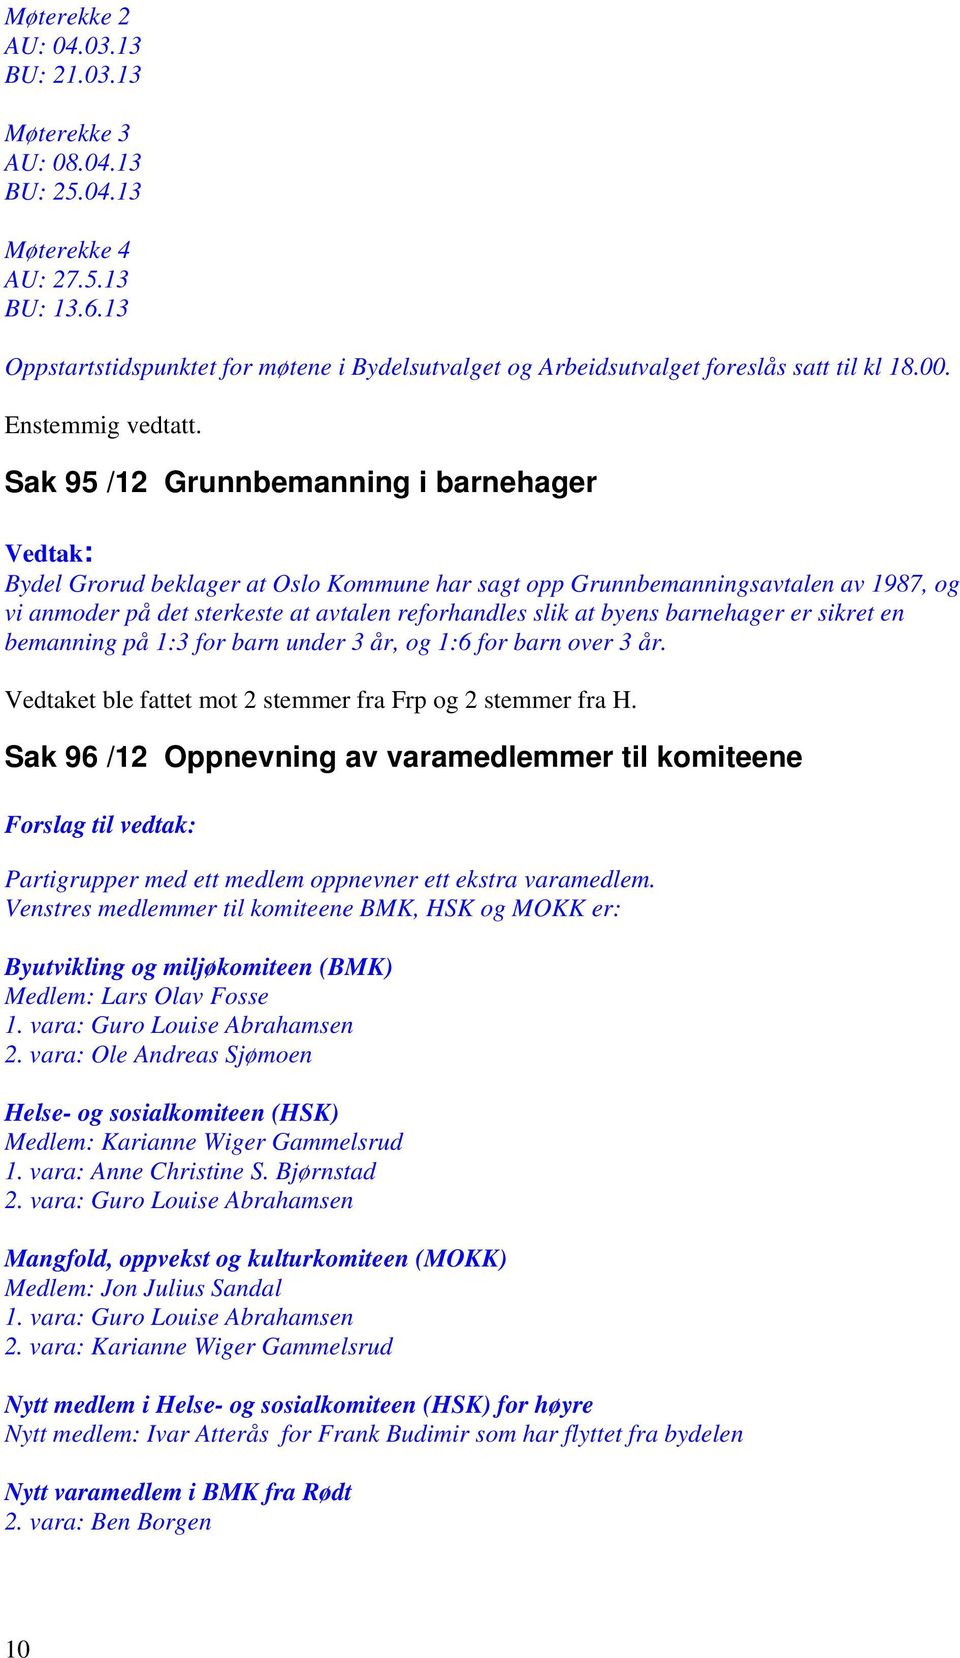 Sak 95 /12 Grunnbemanning i barnehager : Bydel Grorud beklager at Oslo Kommune har sagt opp Grunnbemanningsavtalen av 1987, og vi anmoder på det sterkeste at avtalen reforhandles slik at byens